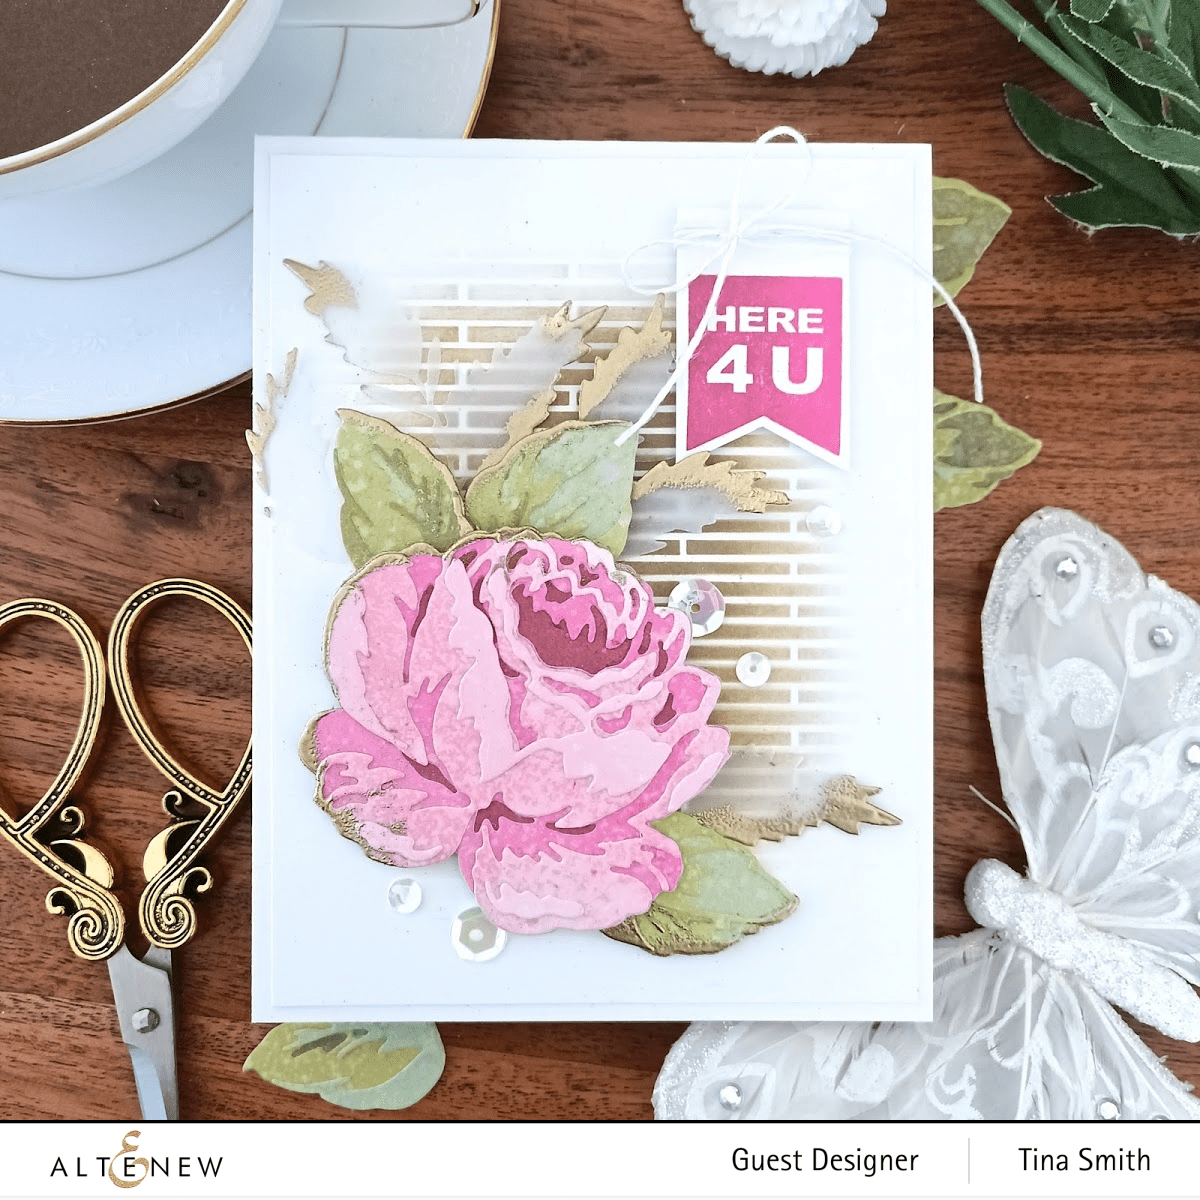 Dies Craft-A-Flower: Antique Rose Layering Die Set